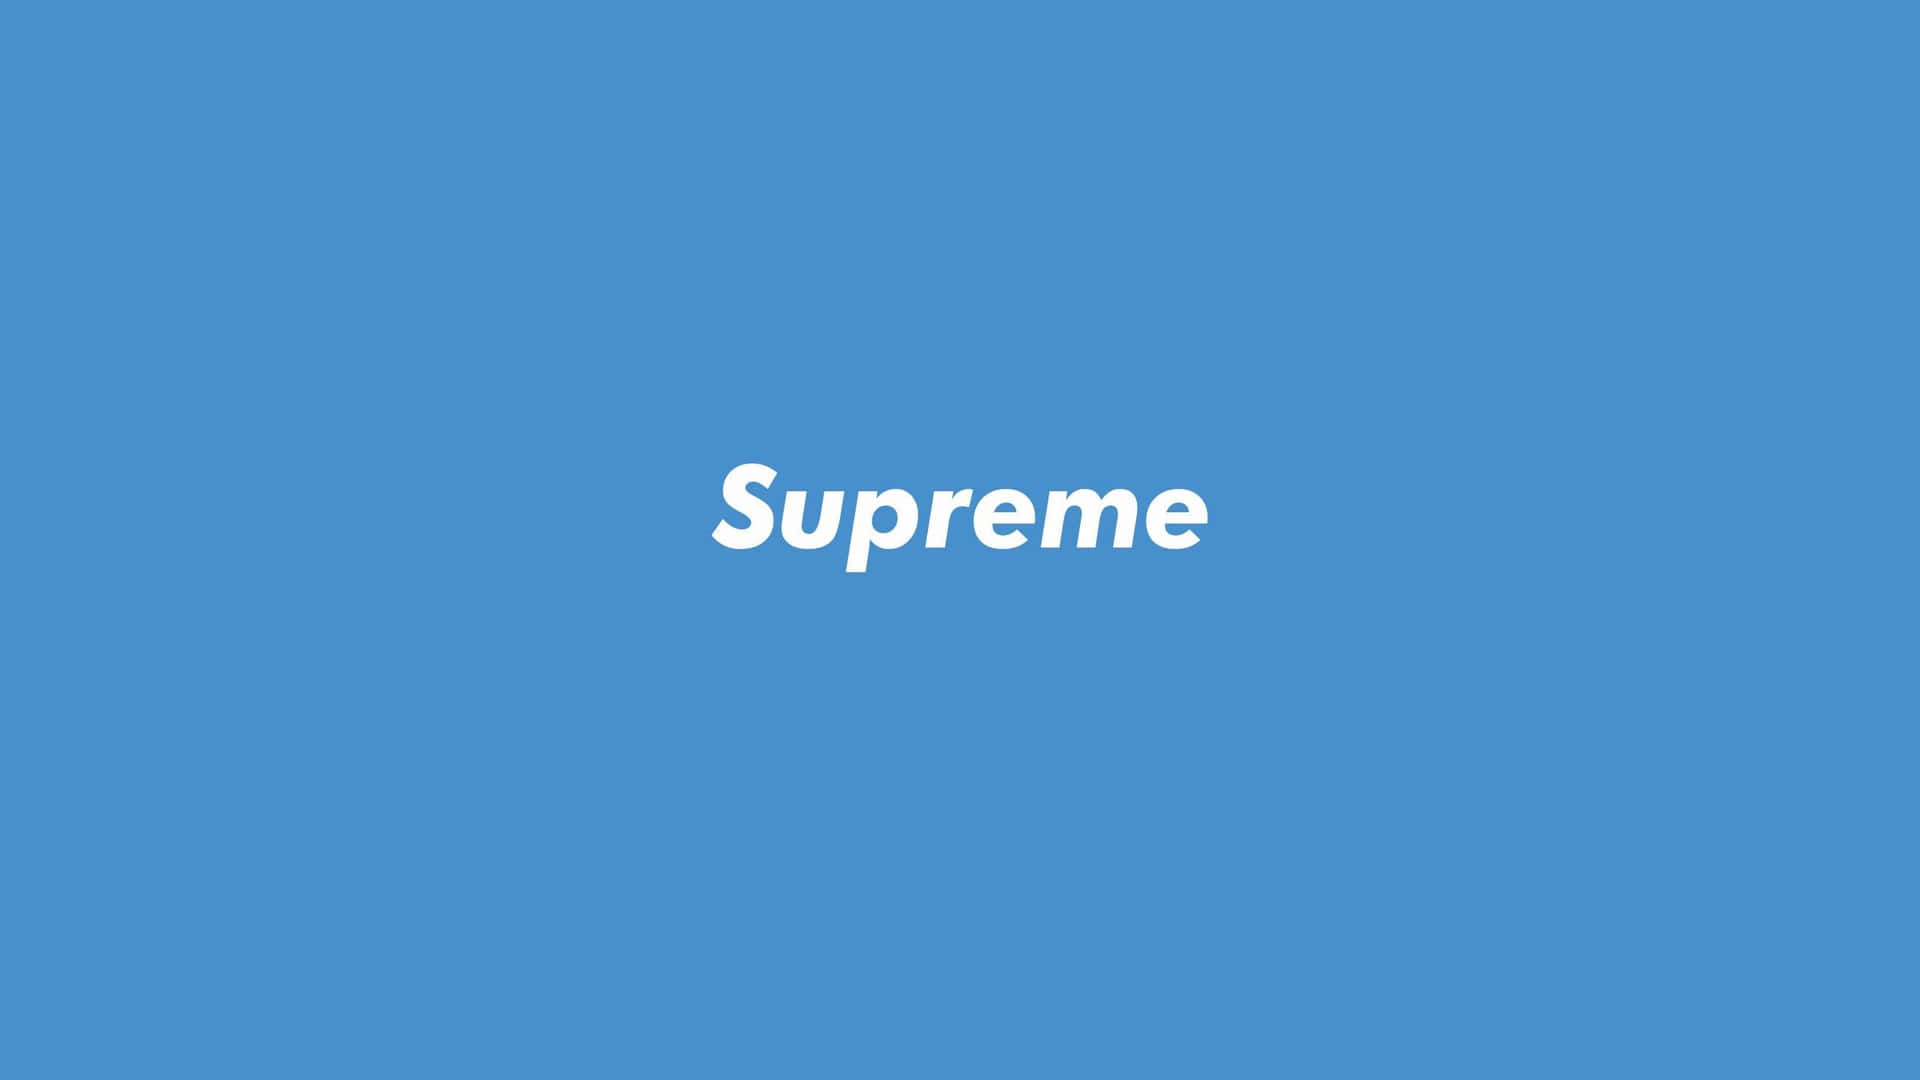 Suprême logo teksttyper som et kunstværk Wallpaper